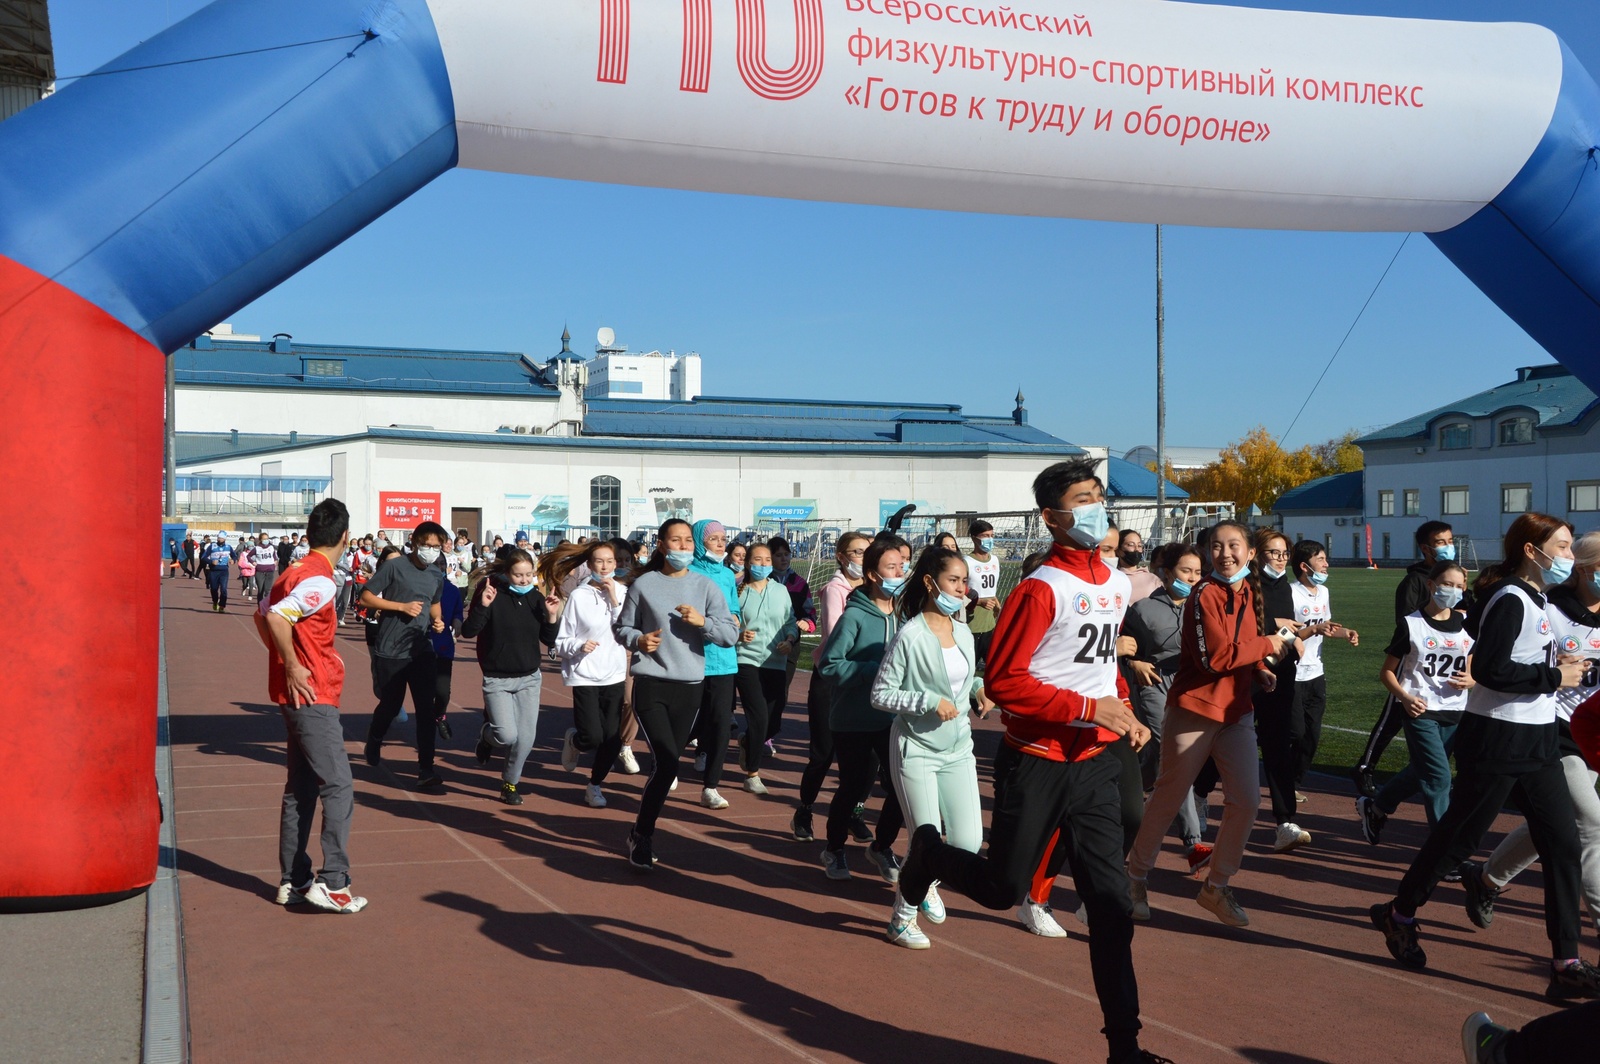 Состоялось открытие Фестиваля по выполнению Всероссийского физкультурно-спортивного комплекса «Готов к труду и обороне»